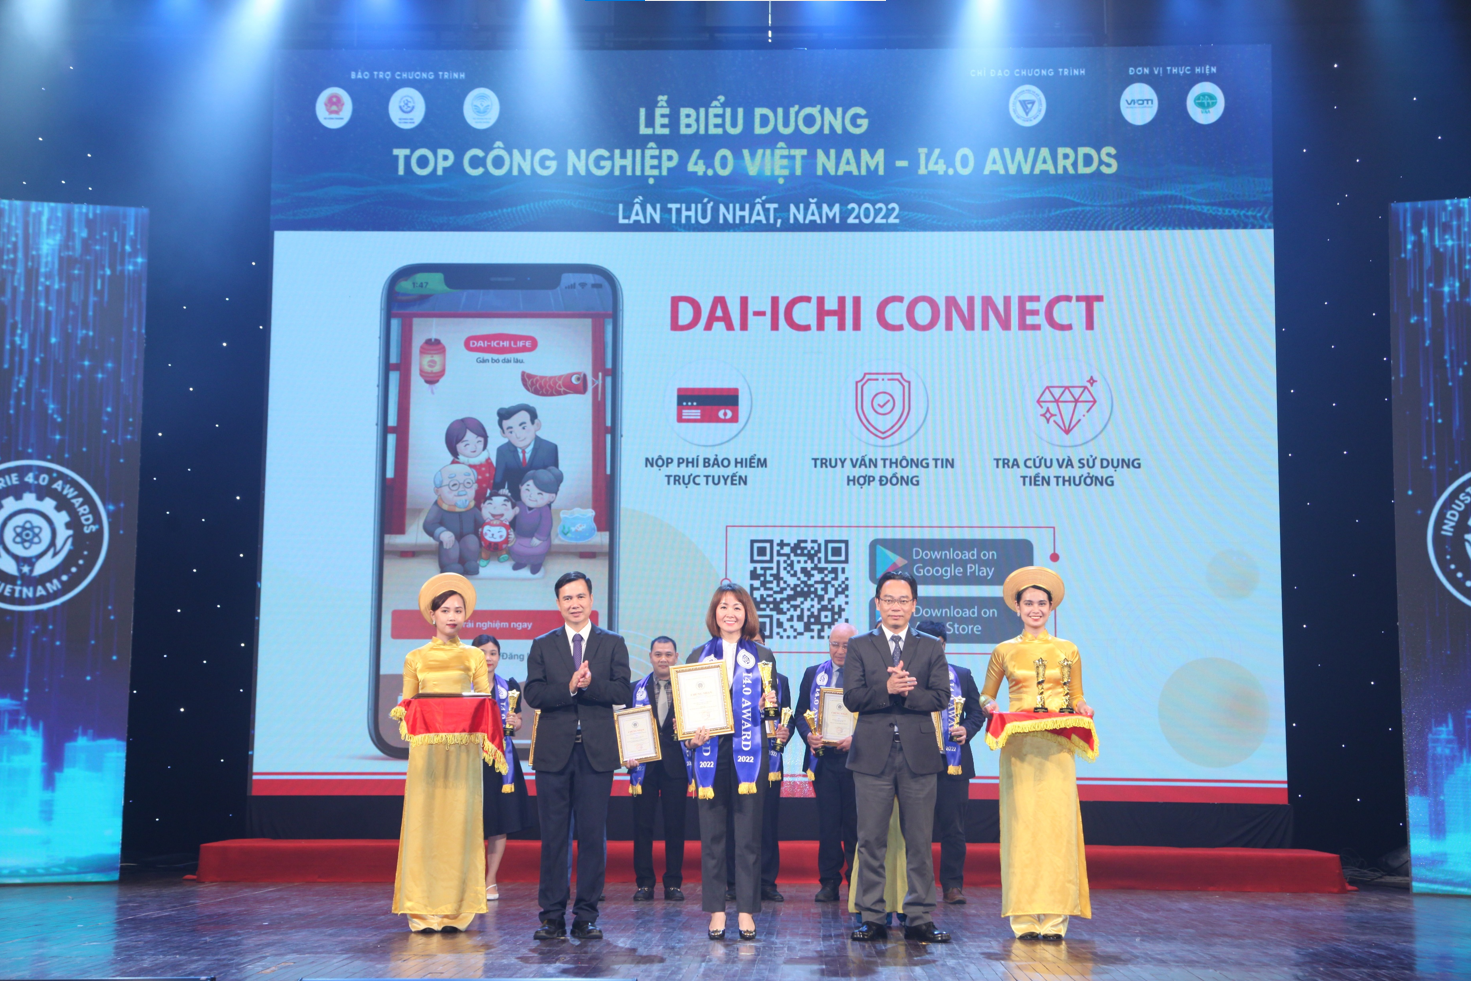 Bà Trần Thị Lan, Giám đốc Kinh doanh Khu Hà Nội - Dai-ichi Life Việt Nam, nhận Giải thưởng "Top Doanh nghiệp Công nghiệp 4.0 Việt Nam"